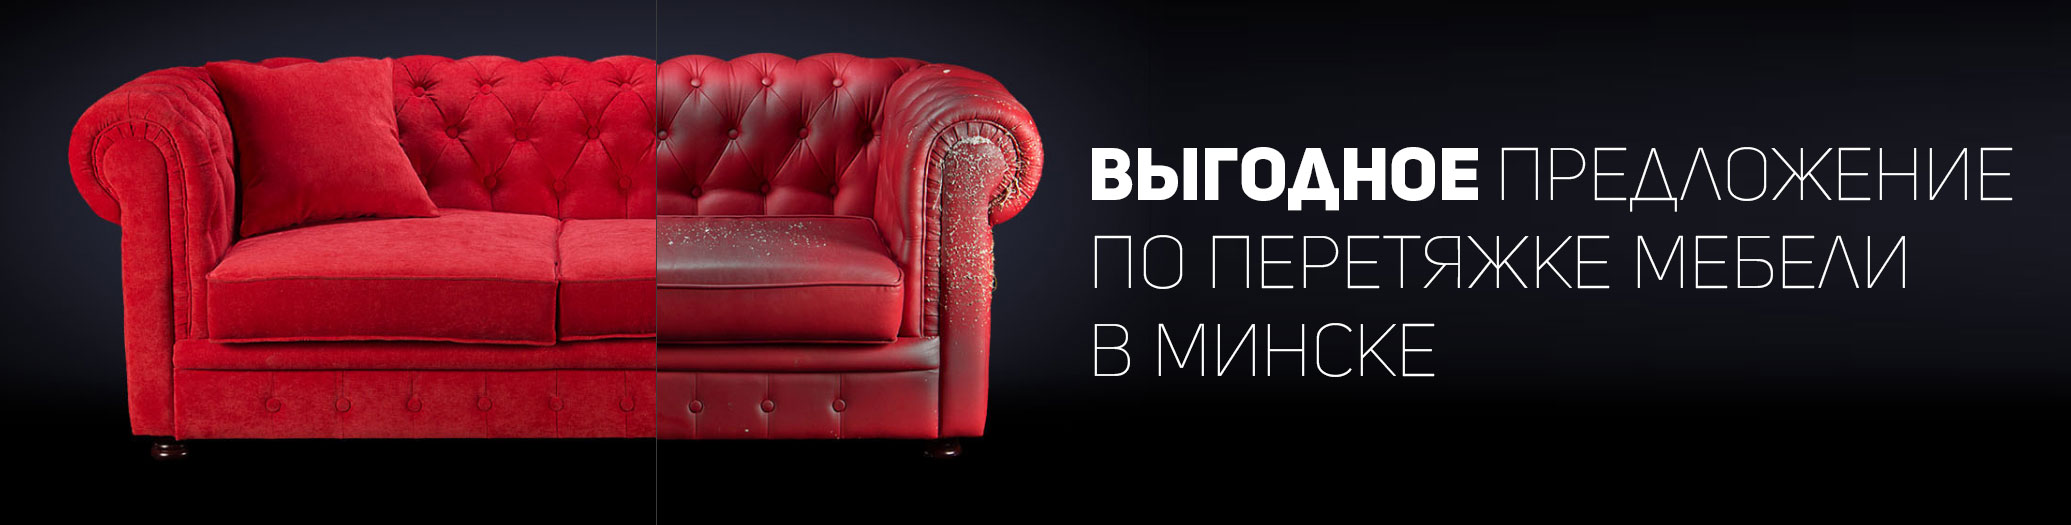 Обивка мягкой мебели в Минске